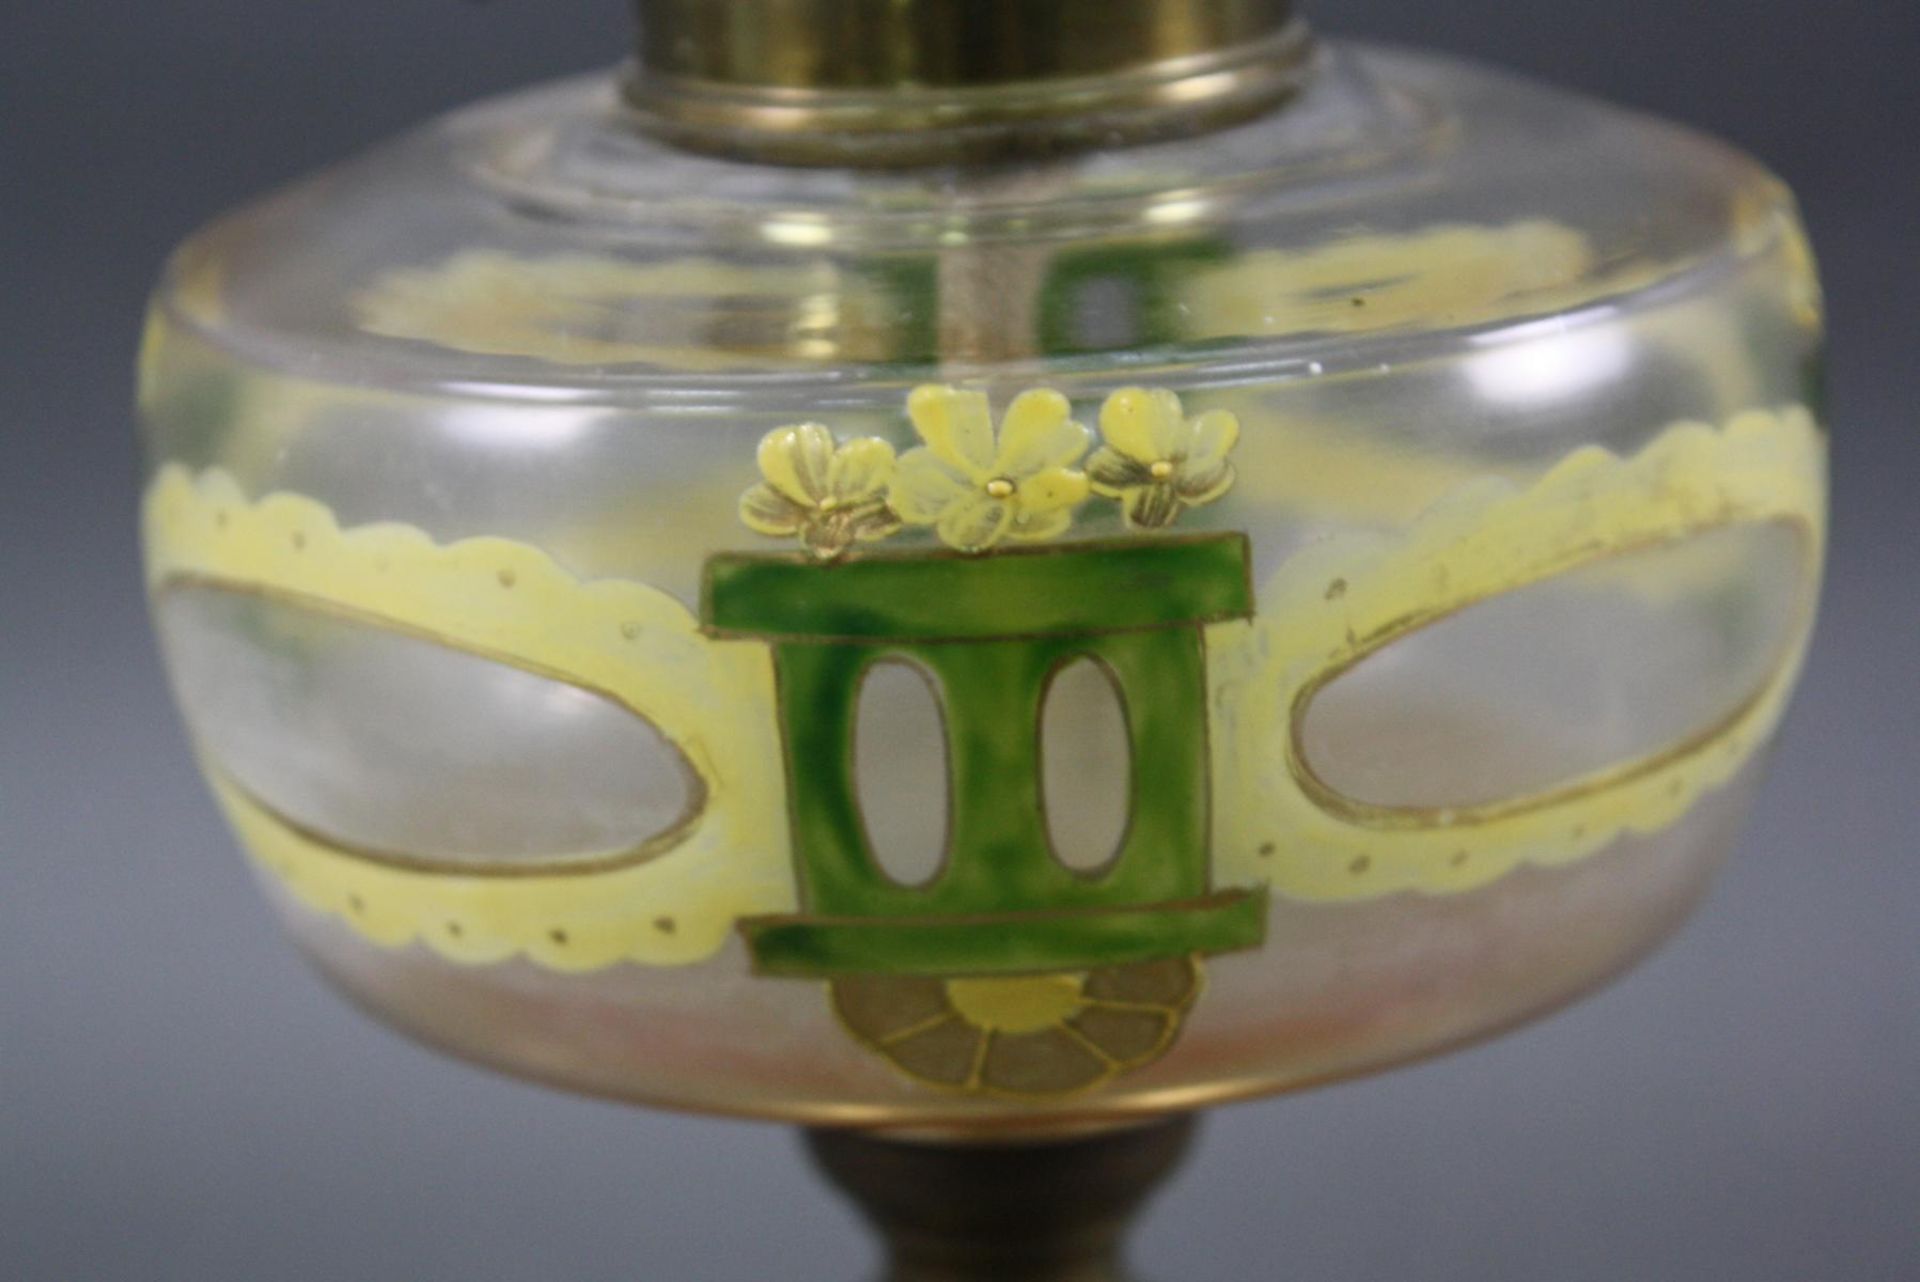 Petroleum-Tischlampe JugendstilMessing/Glas, von Hand bemalter Glasbehälter mit Jugendstilmotiv - Bild 2 aus 3